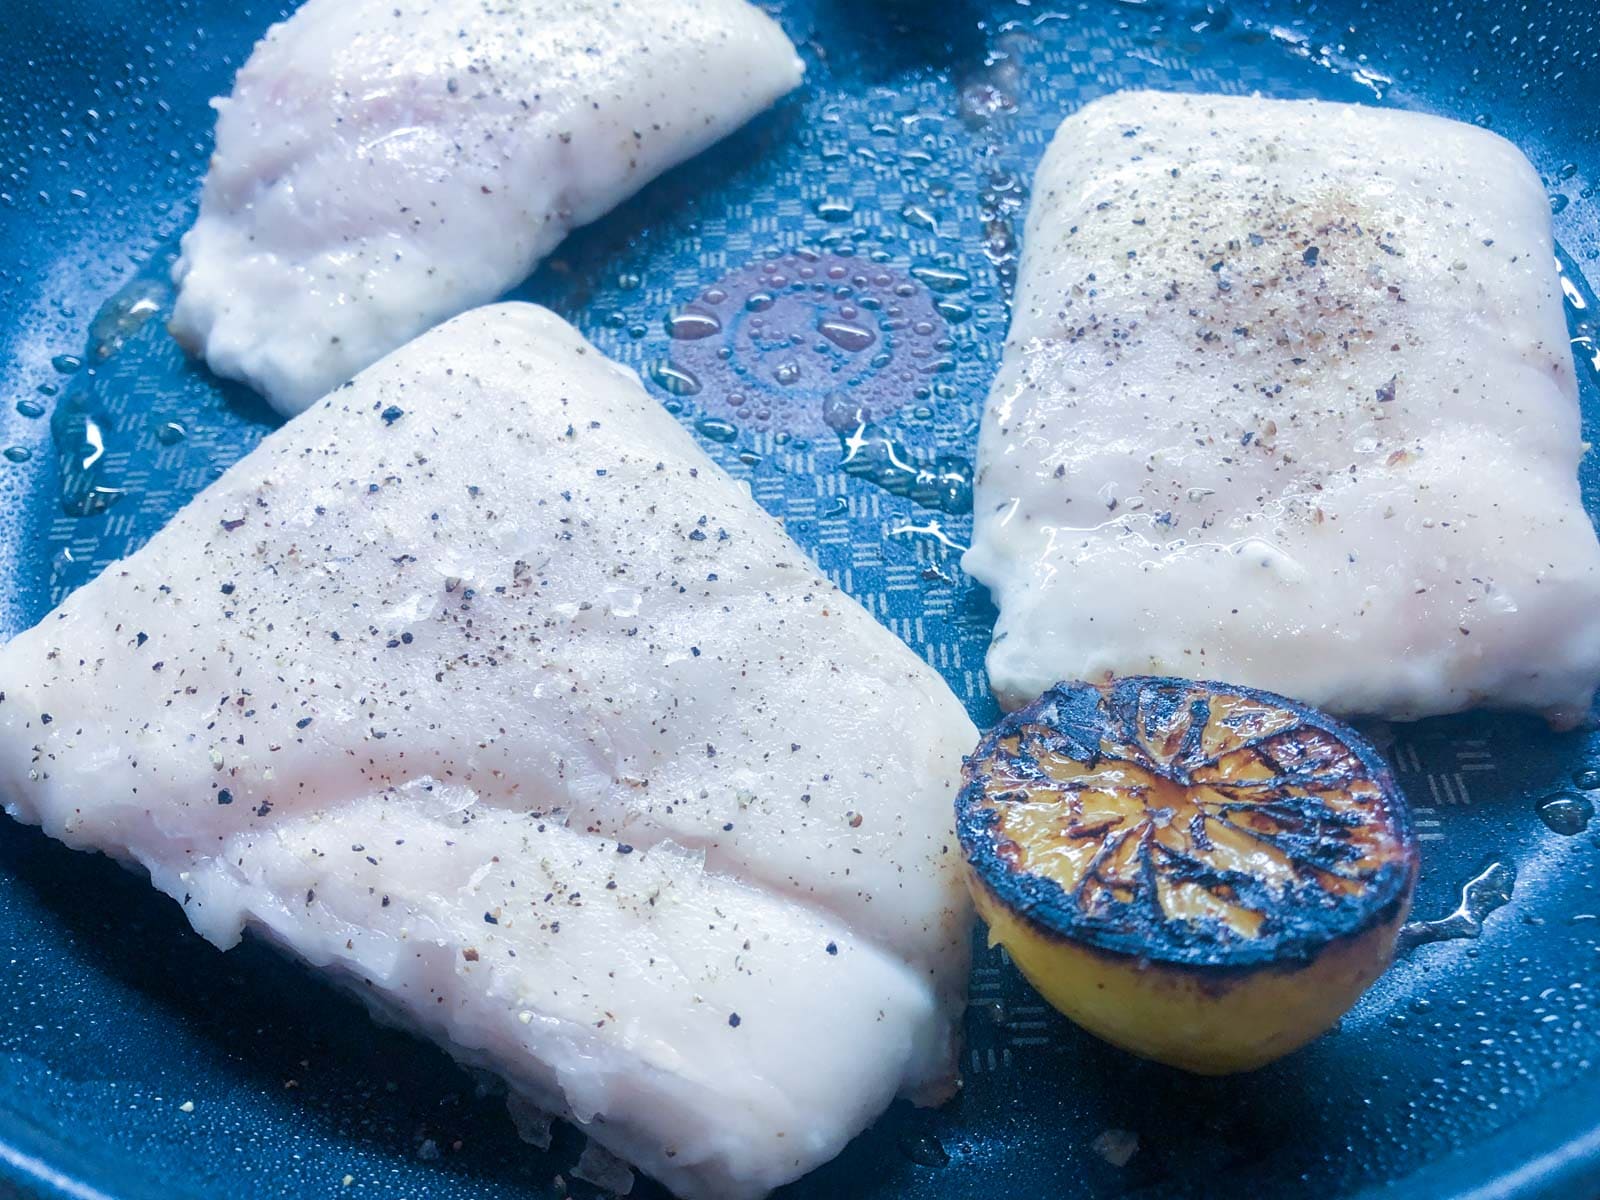 Seasoned hake fillets frying skin side down and lemon halves seared n the pan.